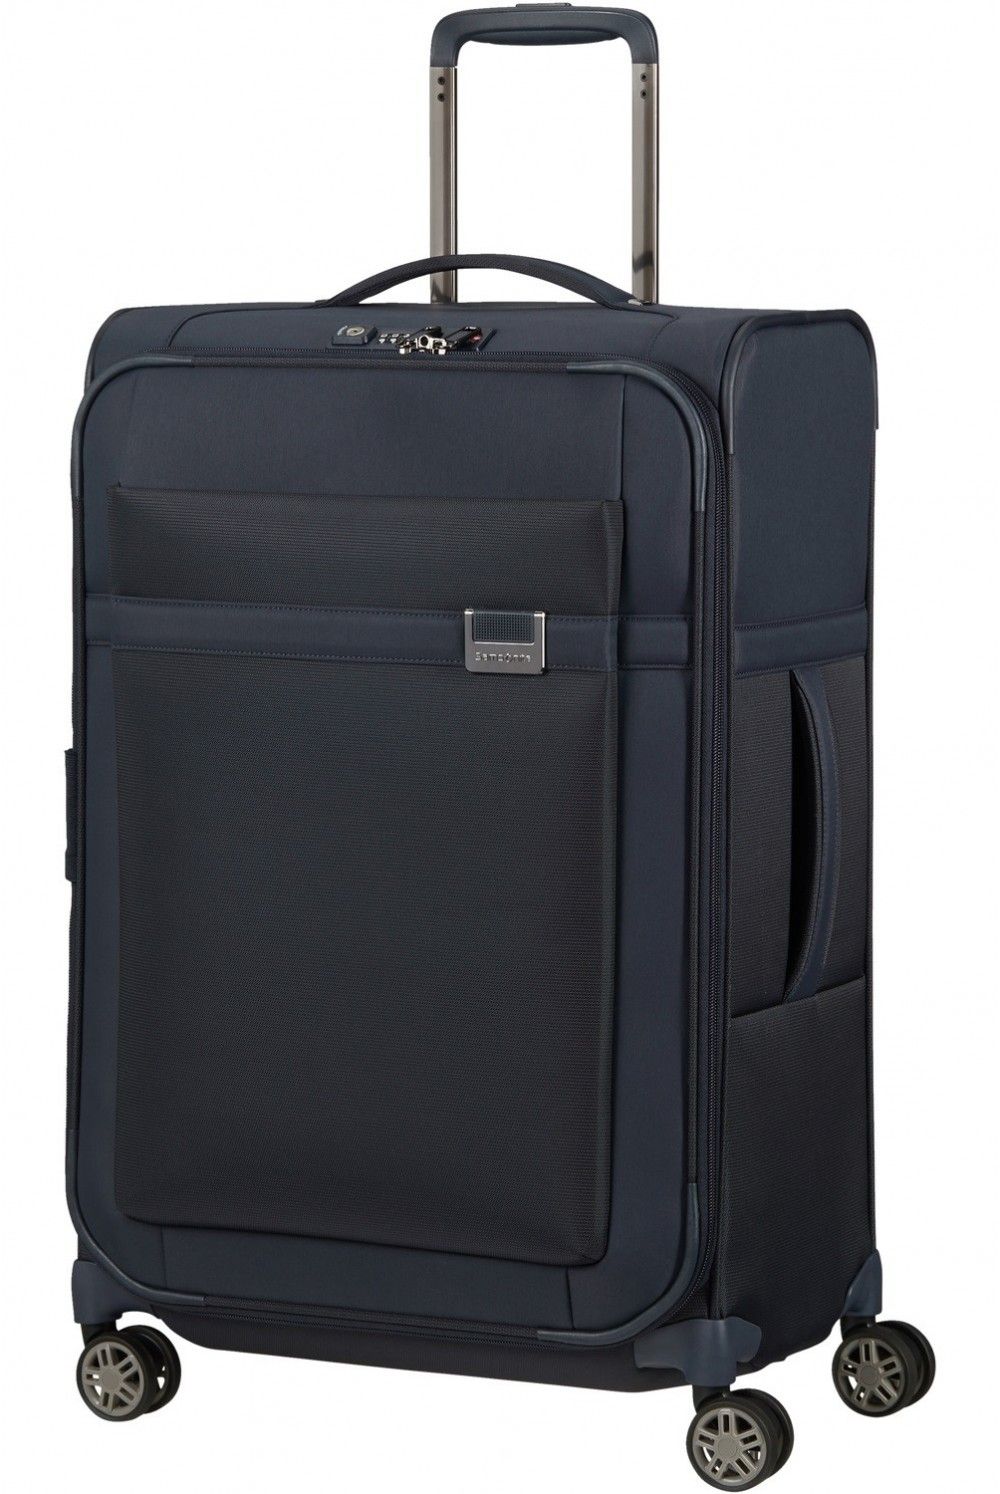 Samsonite Airea 67x43x26-30cm Medium suitcase 4 wheels